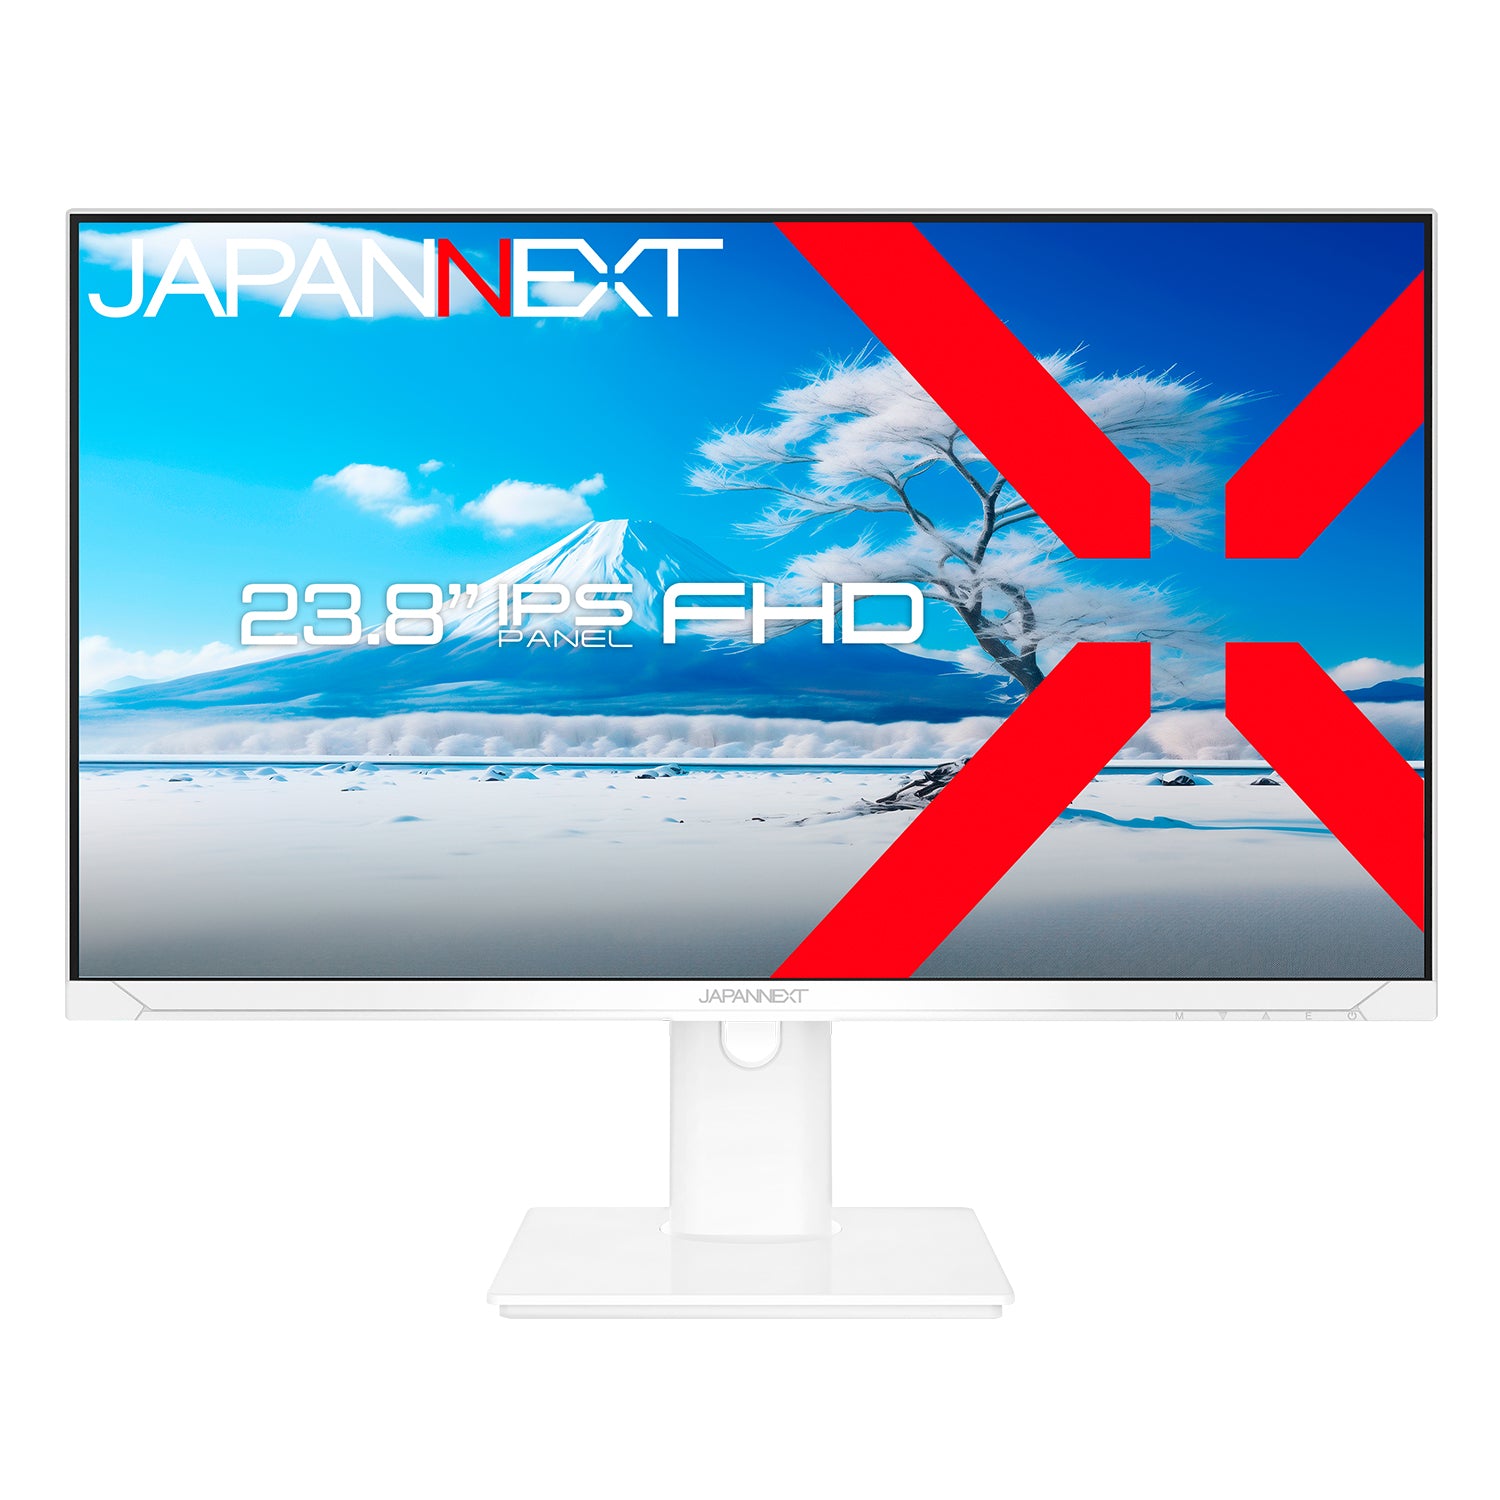 JAPANNEXT 23.8インチ IPSパネル搭載 フルHD(1920x1080)解像度 液晶モニター JN-IPS2382FHDR HDMI VGA HDR ジャパンネクスト